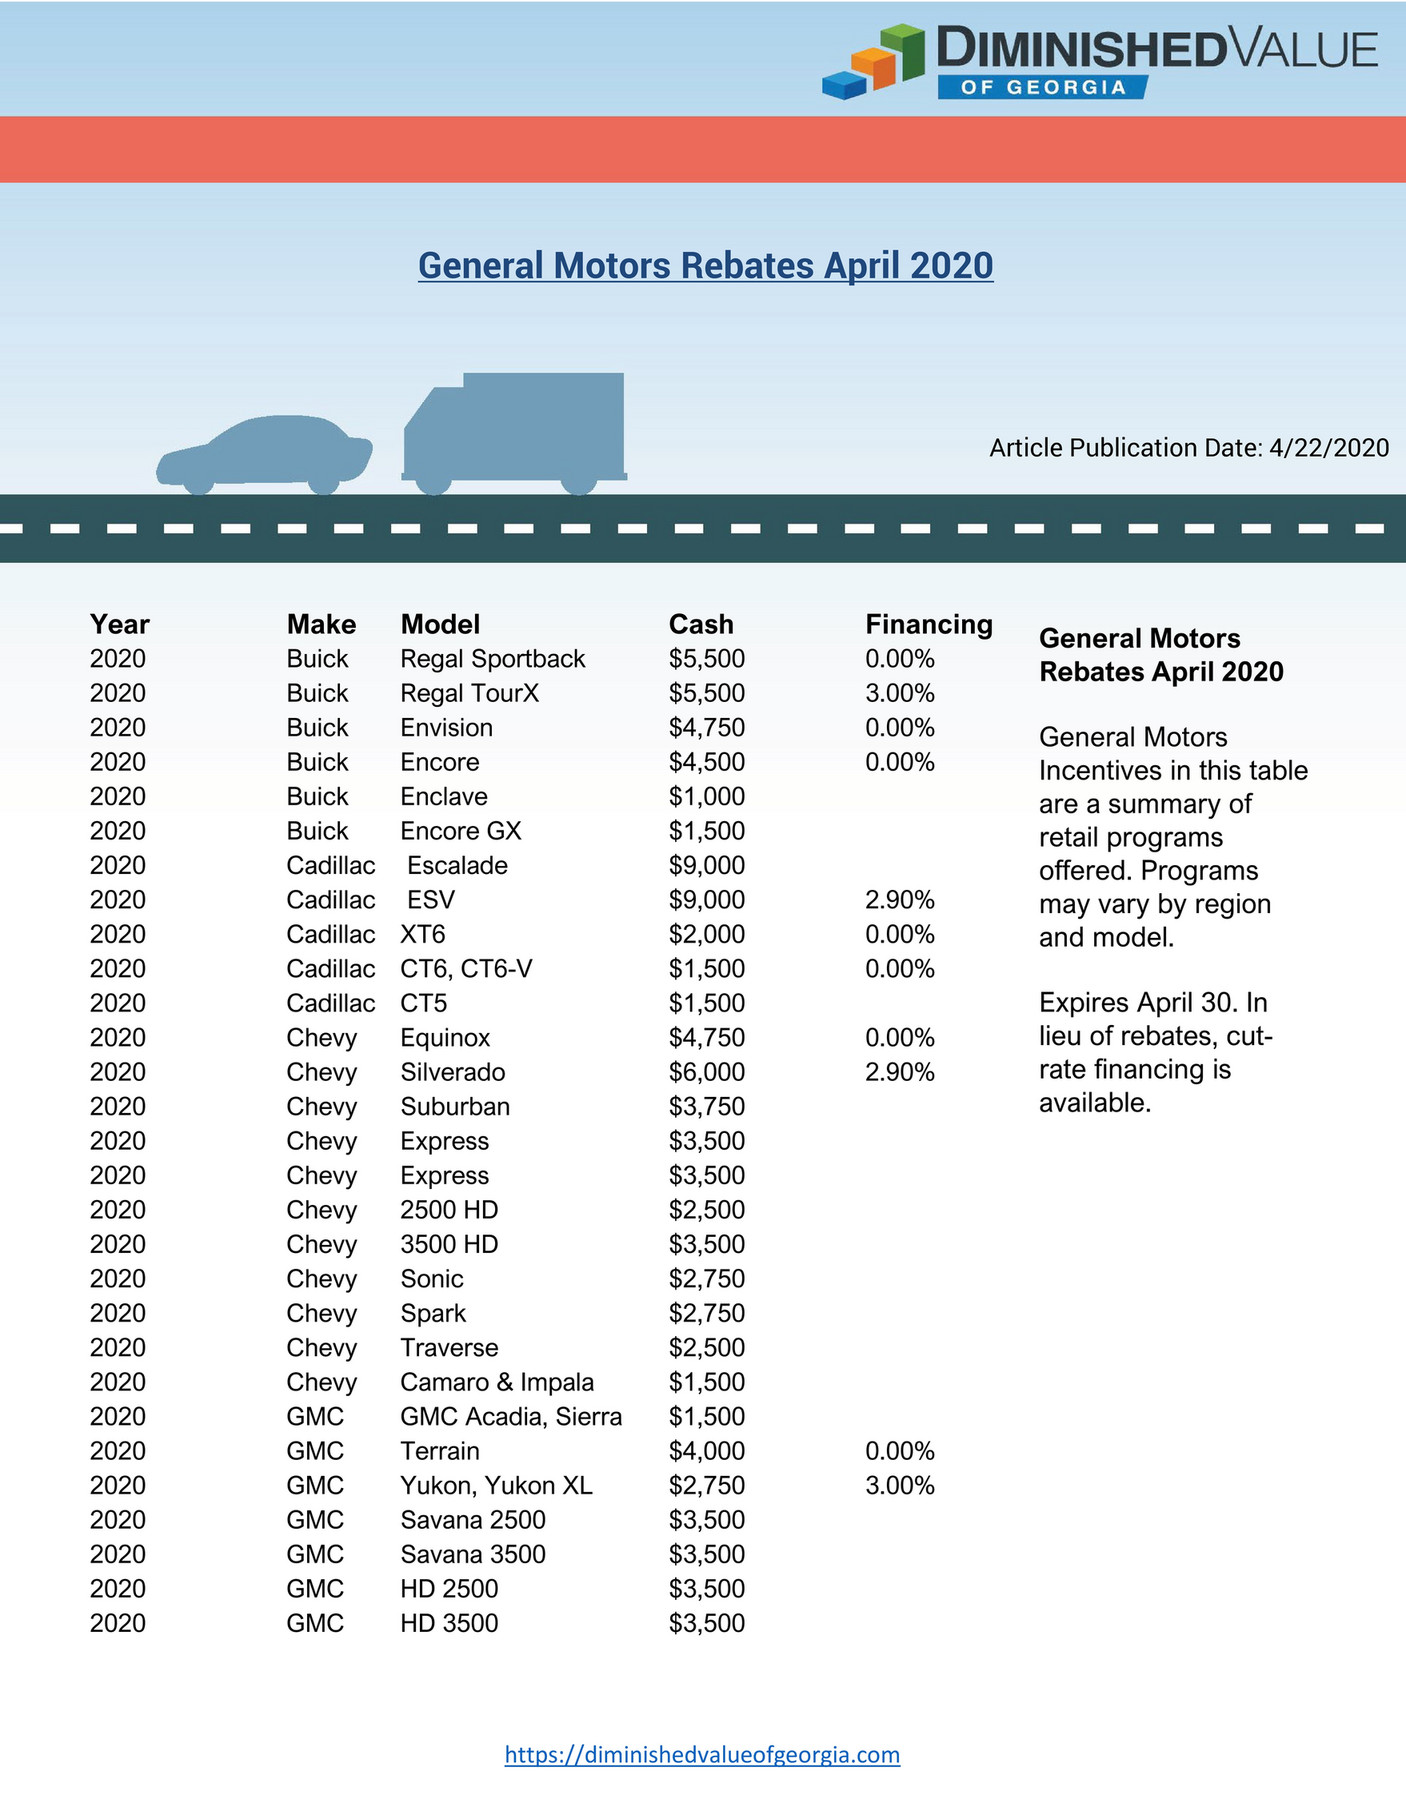 appraisal-engine-inc-general-motors-rebates-april-2020-page-1